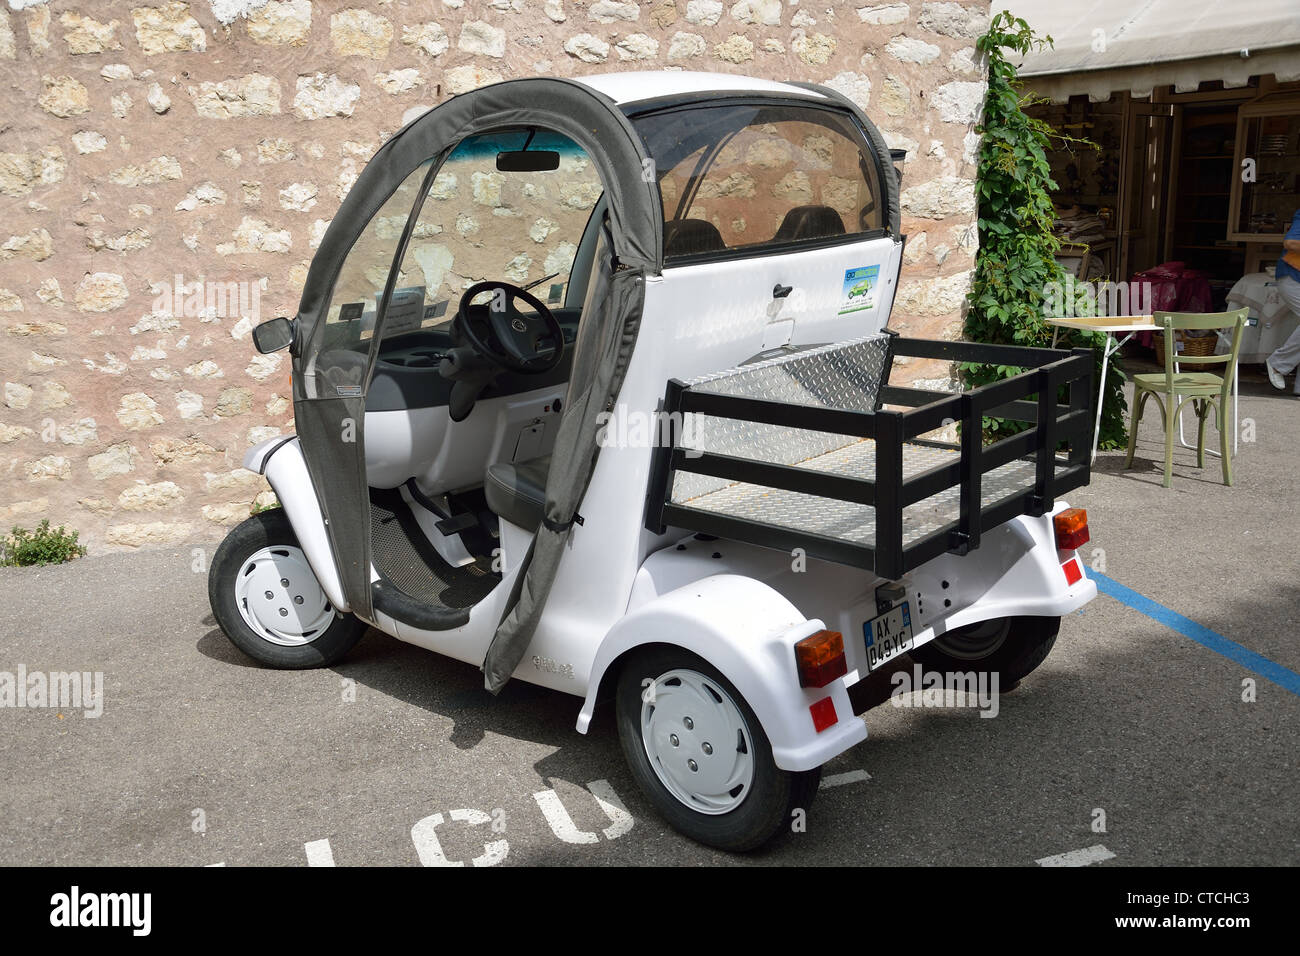 Small electric car in Gourdon, Côte d'Azur, Alpes-Maritimes, Provence-Alpes-Côte d'Azur, France Stock Photo